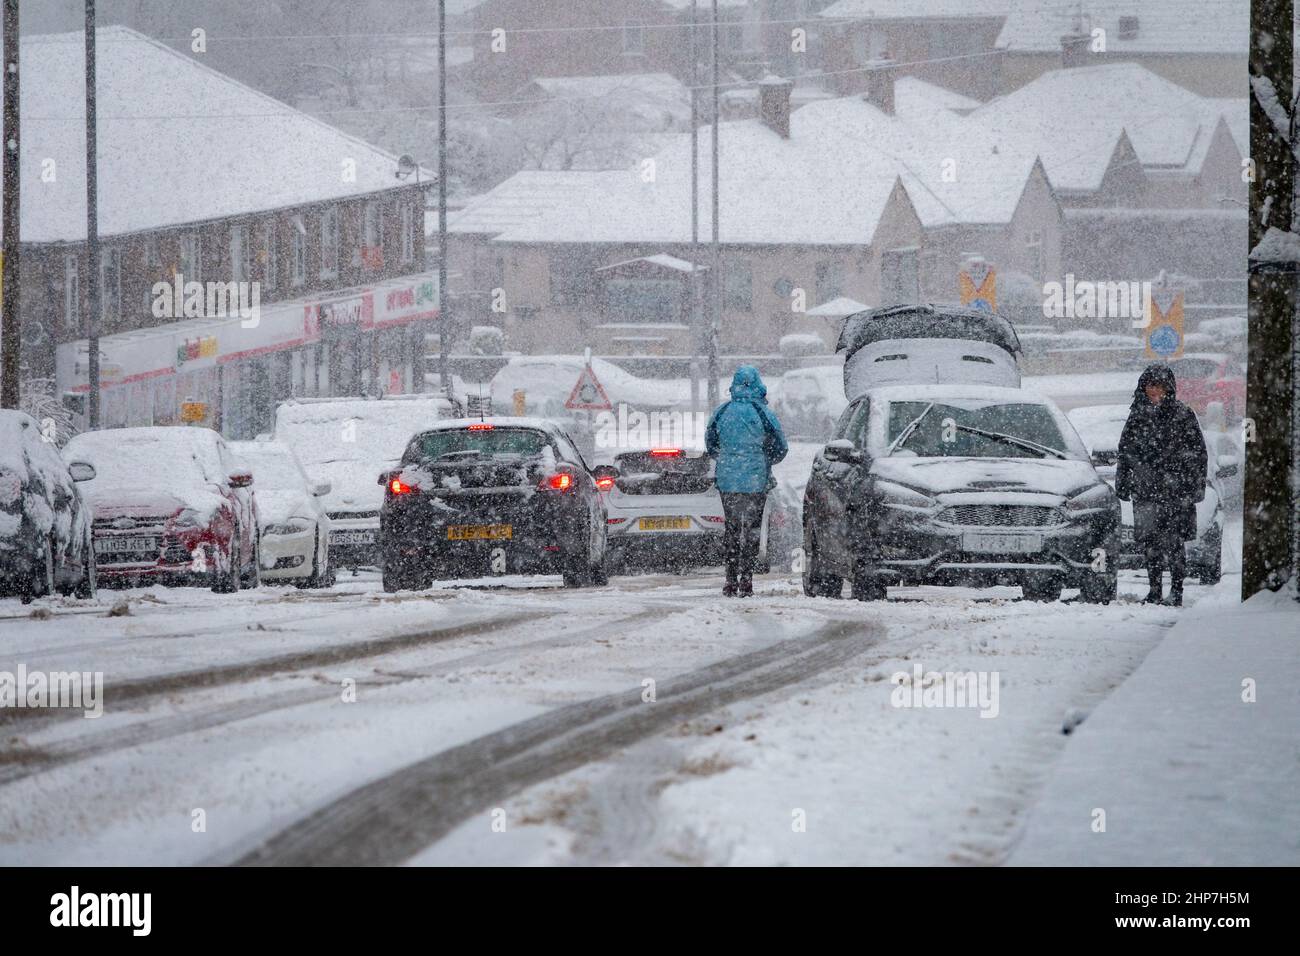 Neve e ghiaccio che causano disagi sulle colline intorno a Bradford, West Yorkshire, Regno Unito. 19th Feb 2022. Le auto lottano per muoversi su superfici invernali scivolose. Le donne cercano di liberare le ruote su una collina nevosa per far muovere la loro auto. Foto Stock